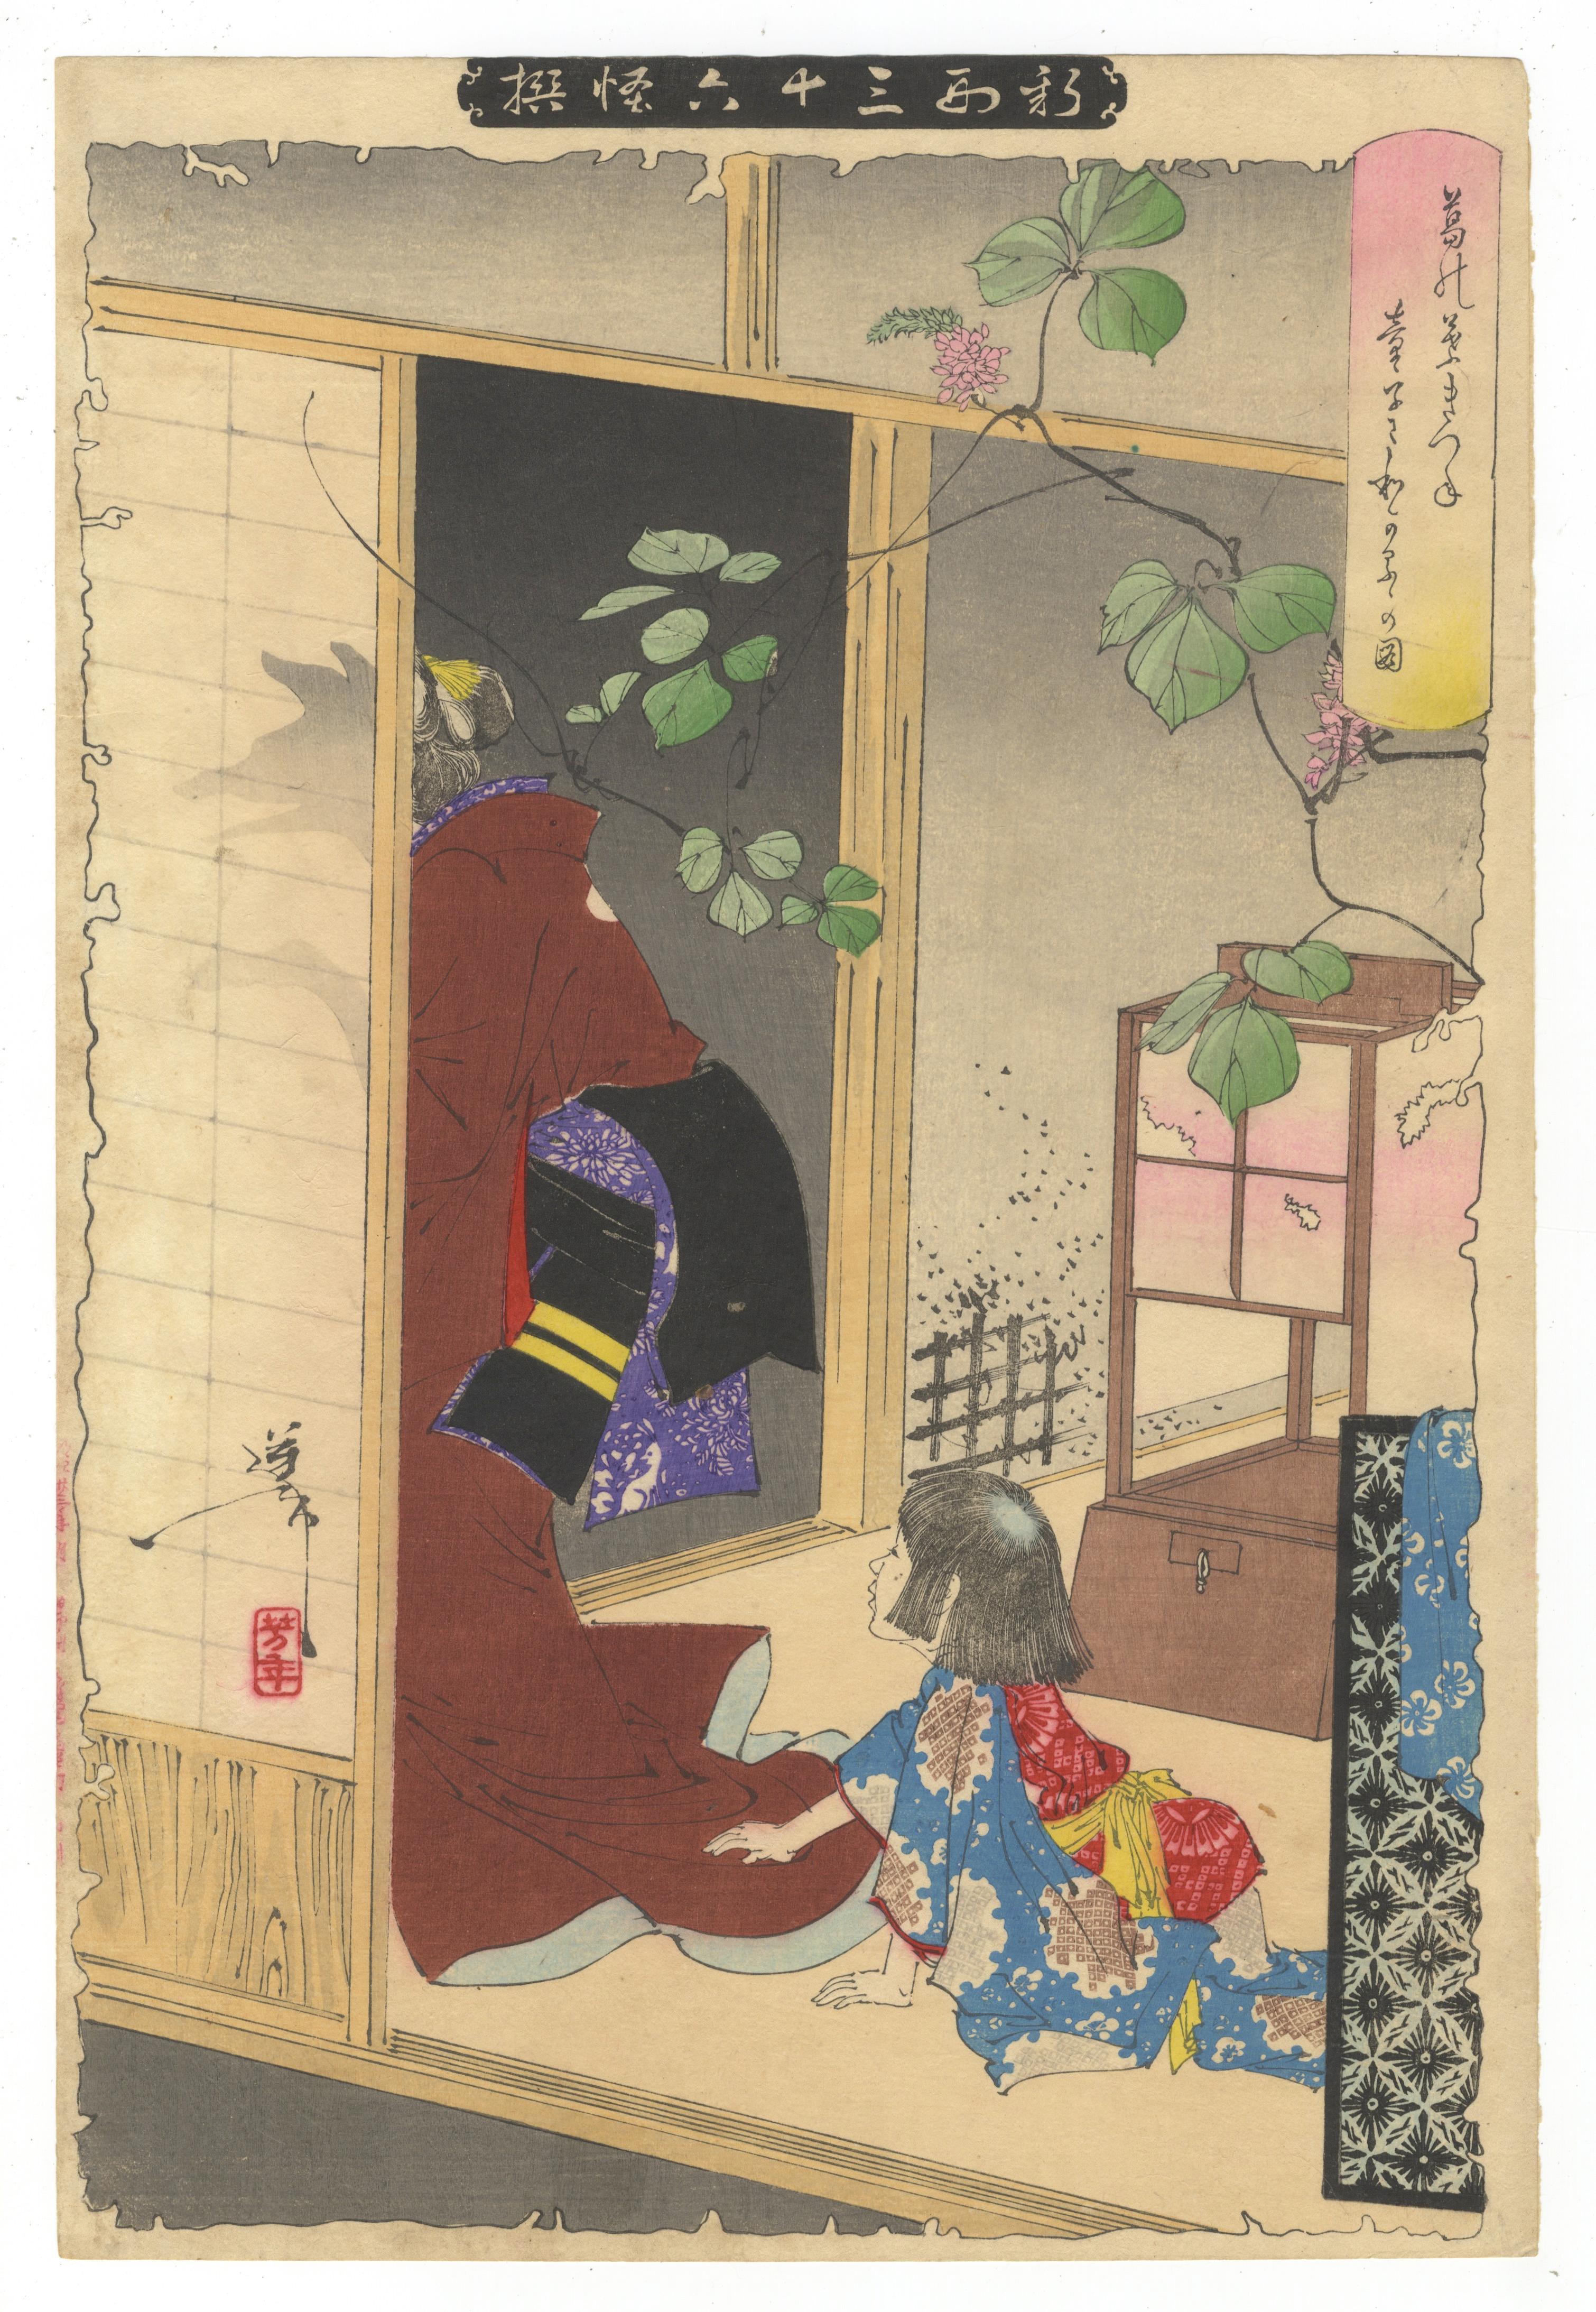 Tsukioka Yoshitoshi Portrait Print - Yoshitoshi, Thirty-Six Ghosts, Fox Woman, Kuzunoha, Japanese Woodblock Print